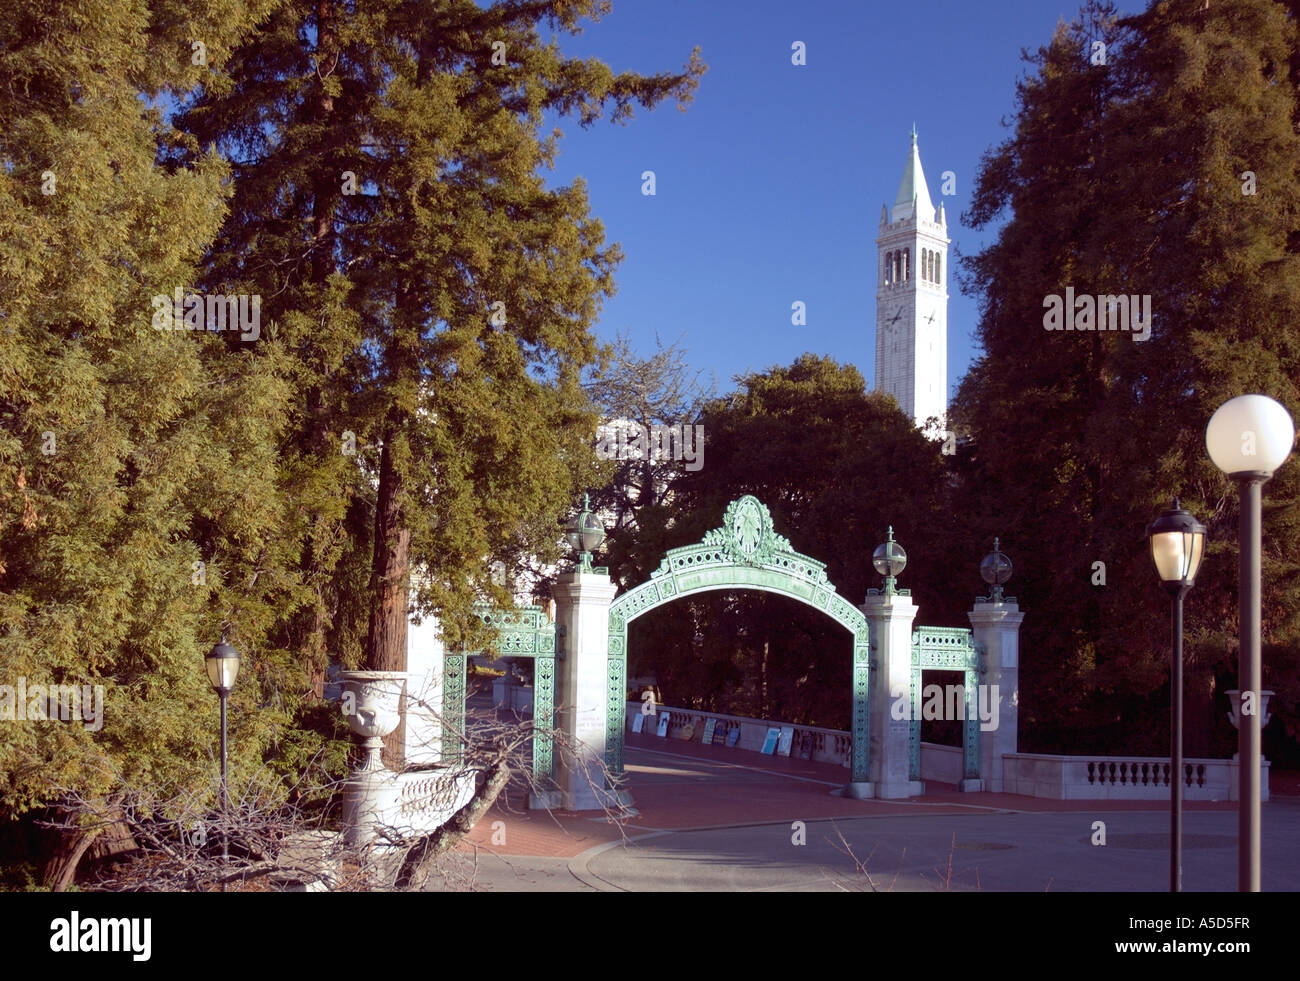 Sather Gate und Sather Tower (Campanile) im Hintergrund, Haupteingang zum Campus University of California, Berkeley Stockfoto